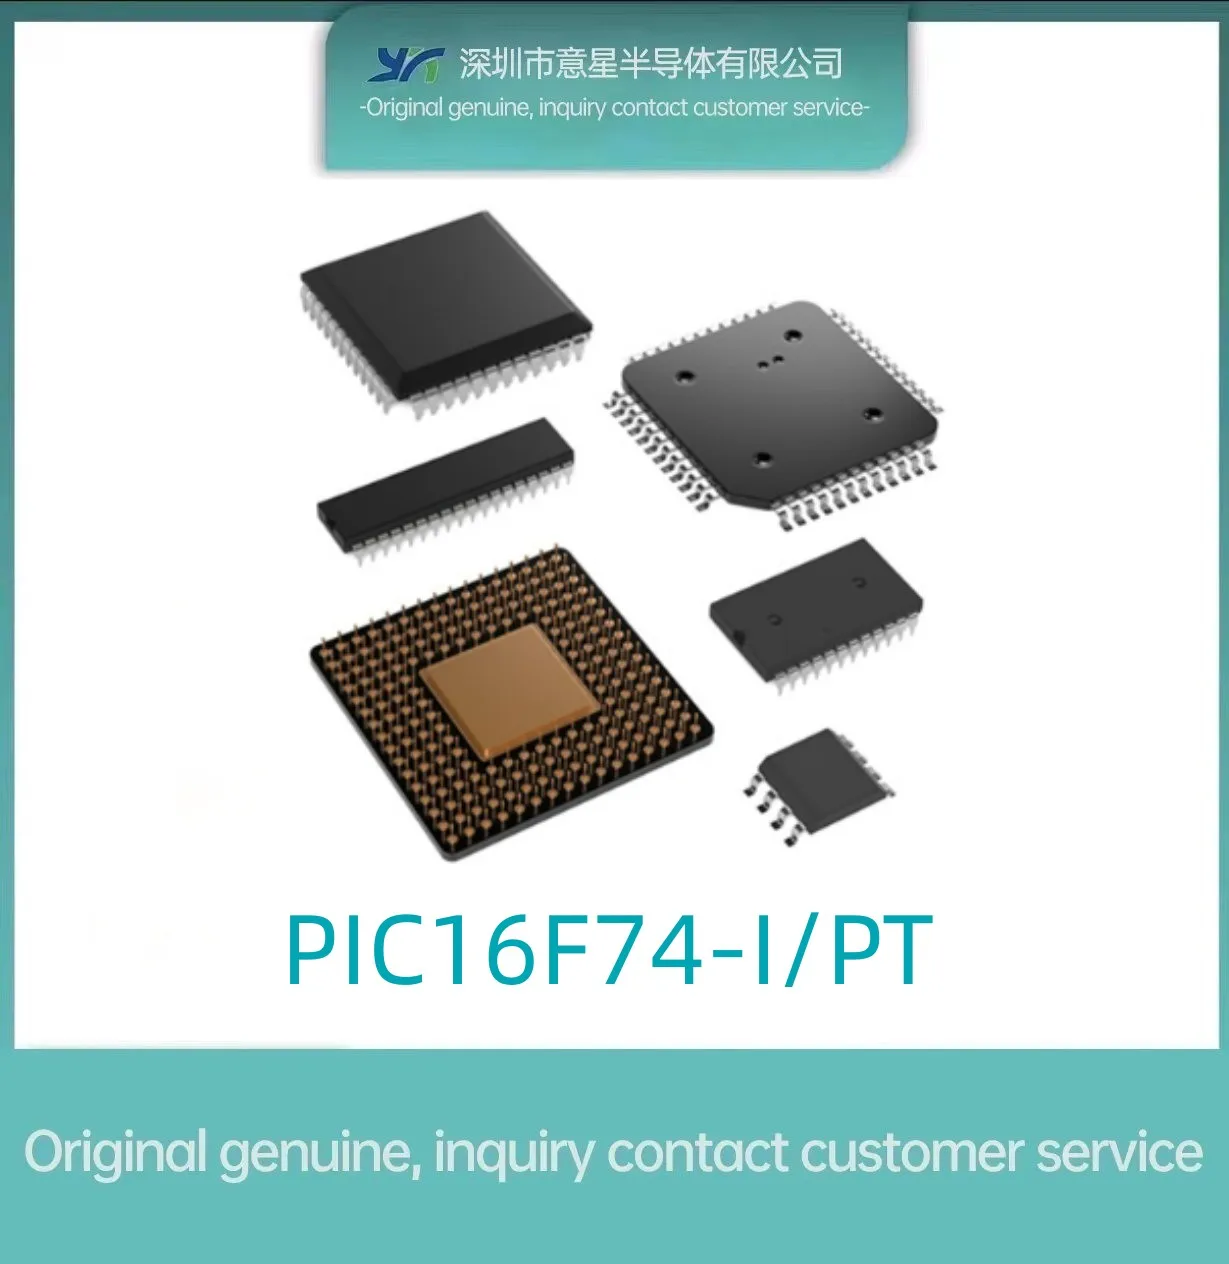 

PIC16F74-I/PT посылка TQFP44 8-битный оригинальный аутентичный микроконтроллер